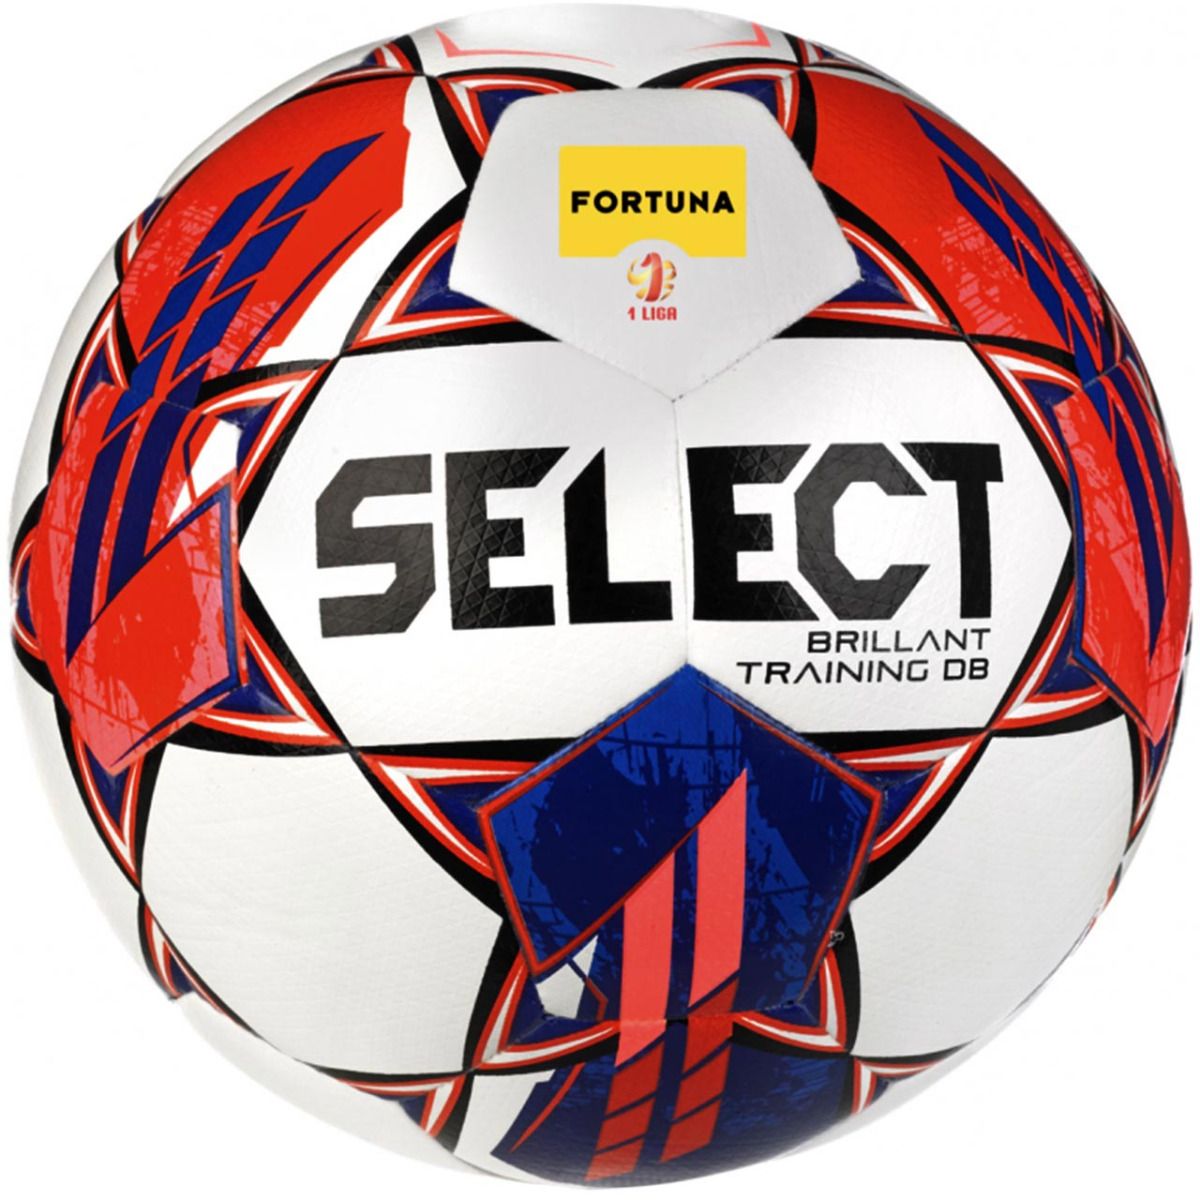 Select Futbalový míč Derbystar Brillant Training DB v23 18180